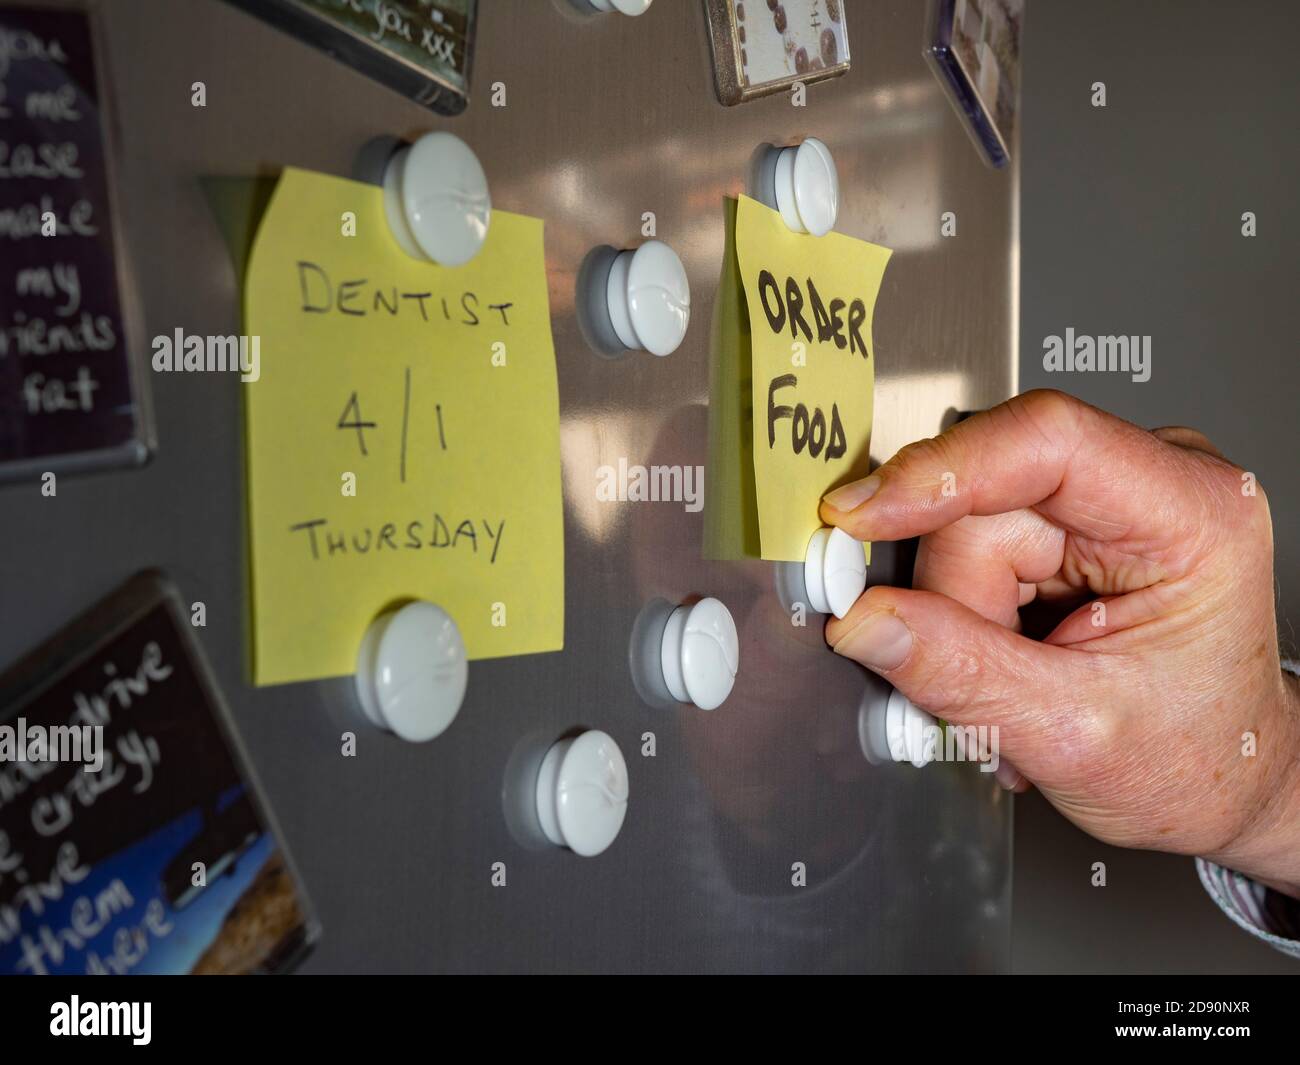 Gros plan de la main d'un homme en collant une note pour commander des aliments sur une porte de réfrigérateur, à l'aide d'aimants. Banque D'Images